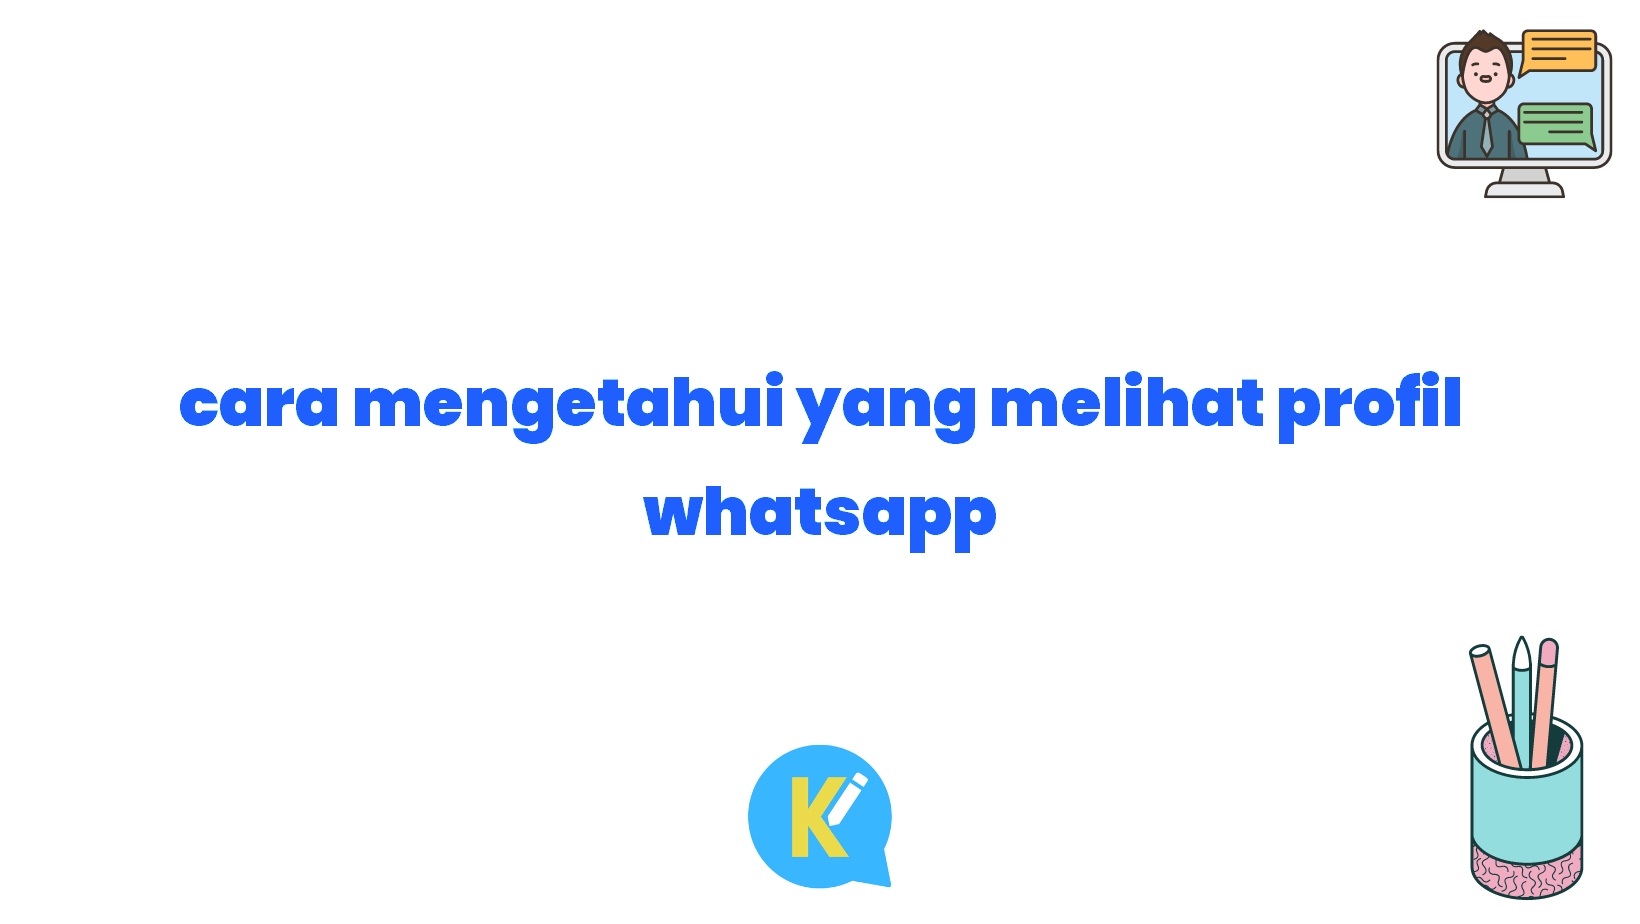 cara mengetahui yang melihat profil whatsapp